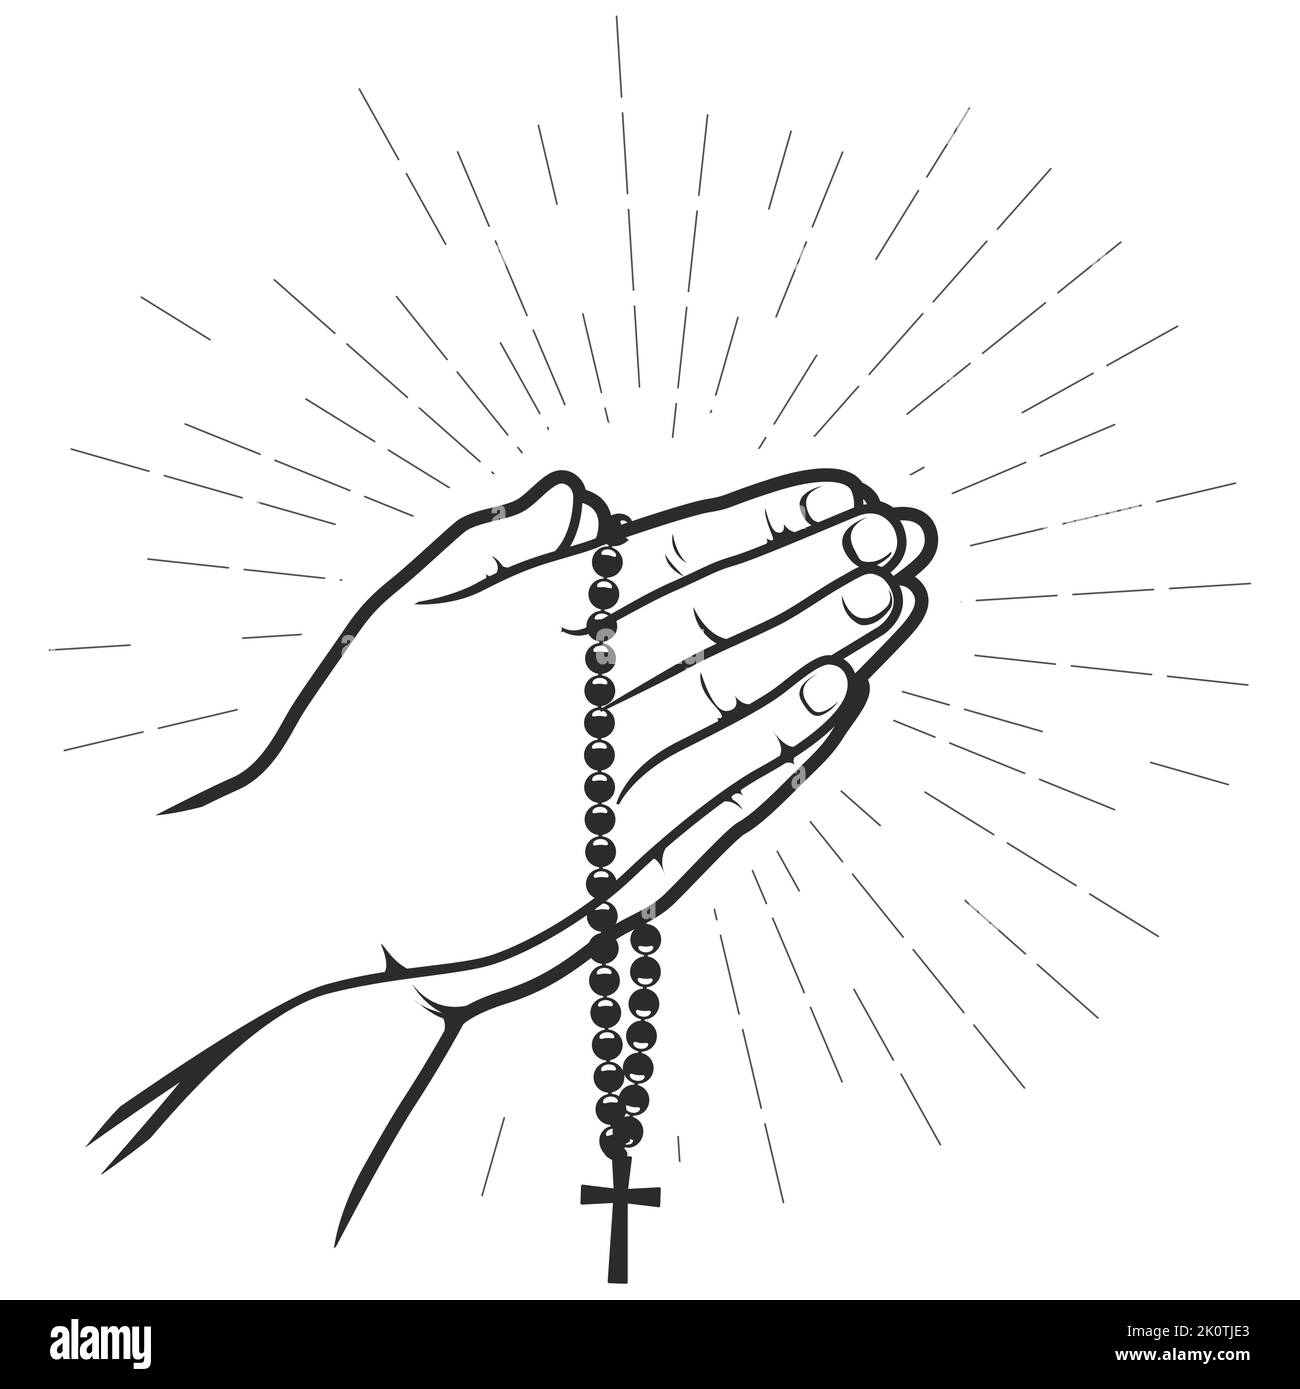 Handflächen im Gebet gefaltet mit Kruzifix auf Perlen, Glaube und Hoffnung Konzept, Vektor Stock Vektor